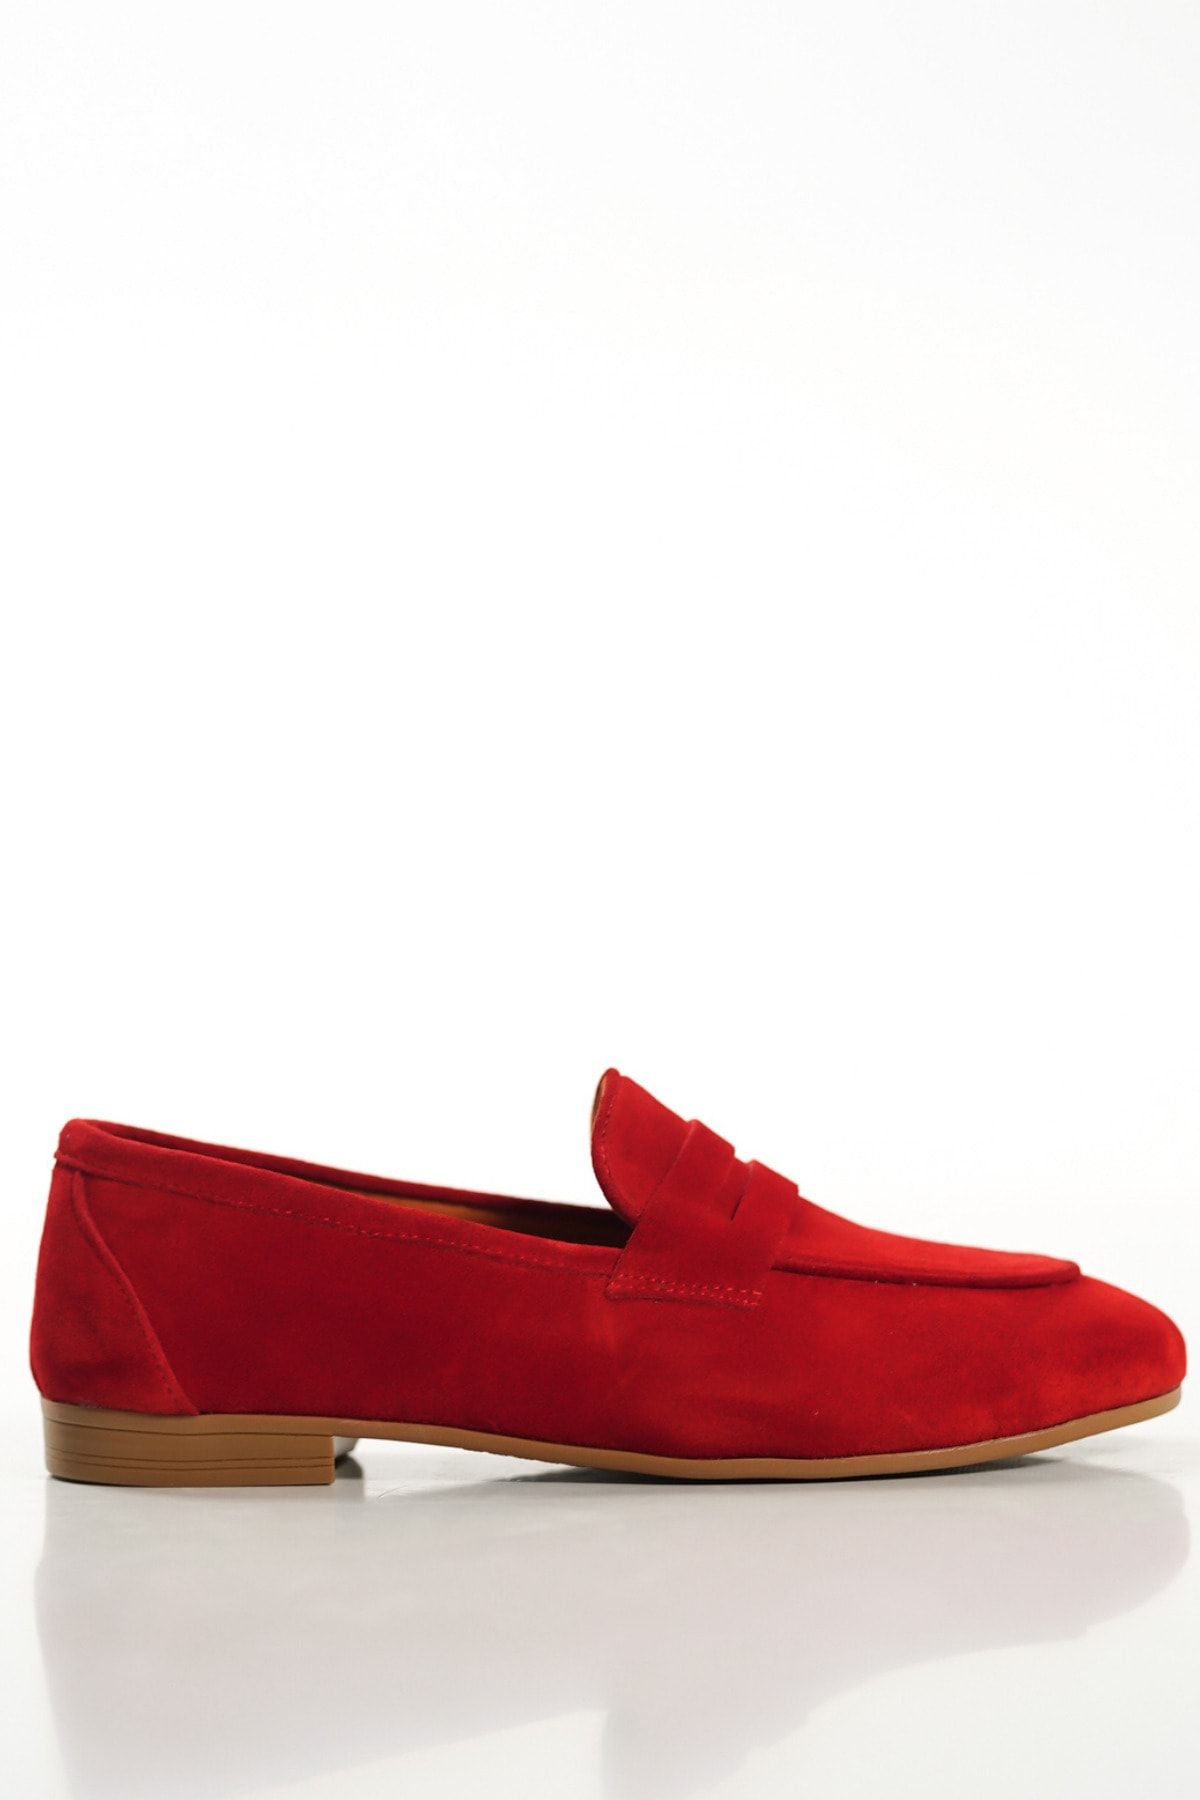 SAYL Kırmızı Süet Hakiki Deri Kadın Loafer Babet Fiyonk Detaylı Makosen Ayakkabı